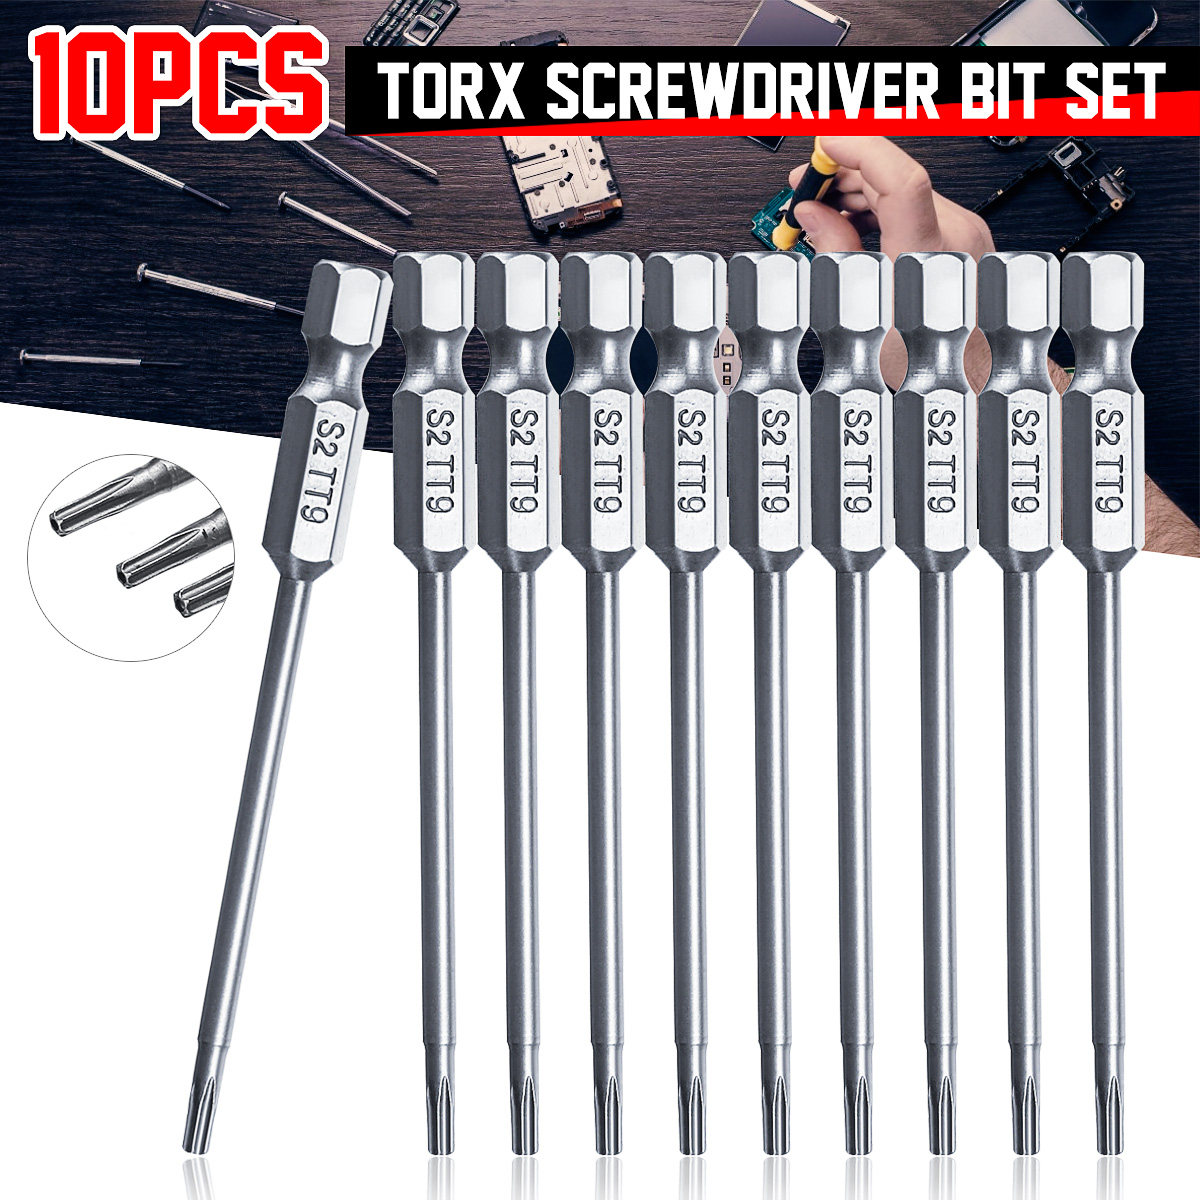 10pcs-TT6-TT40-Torx-Head-Screwdriver-Bit-75mm-Hex-Shank-Power-Drill-Screwdriver-Bits-Set-1550213-1